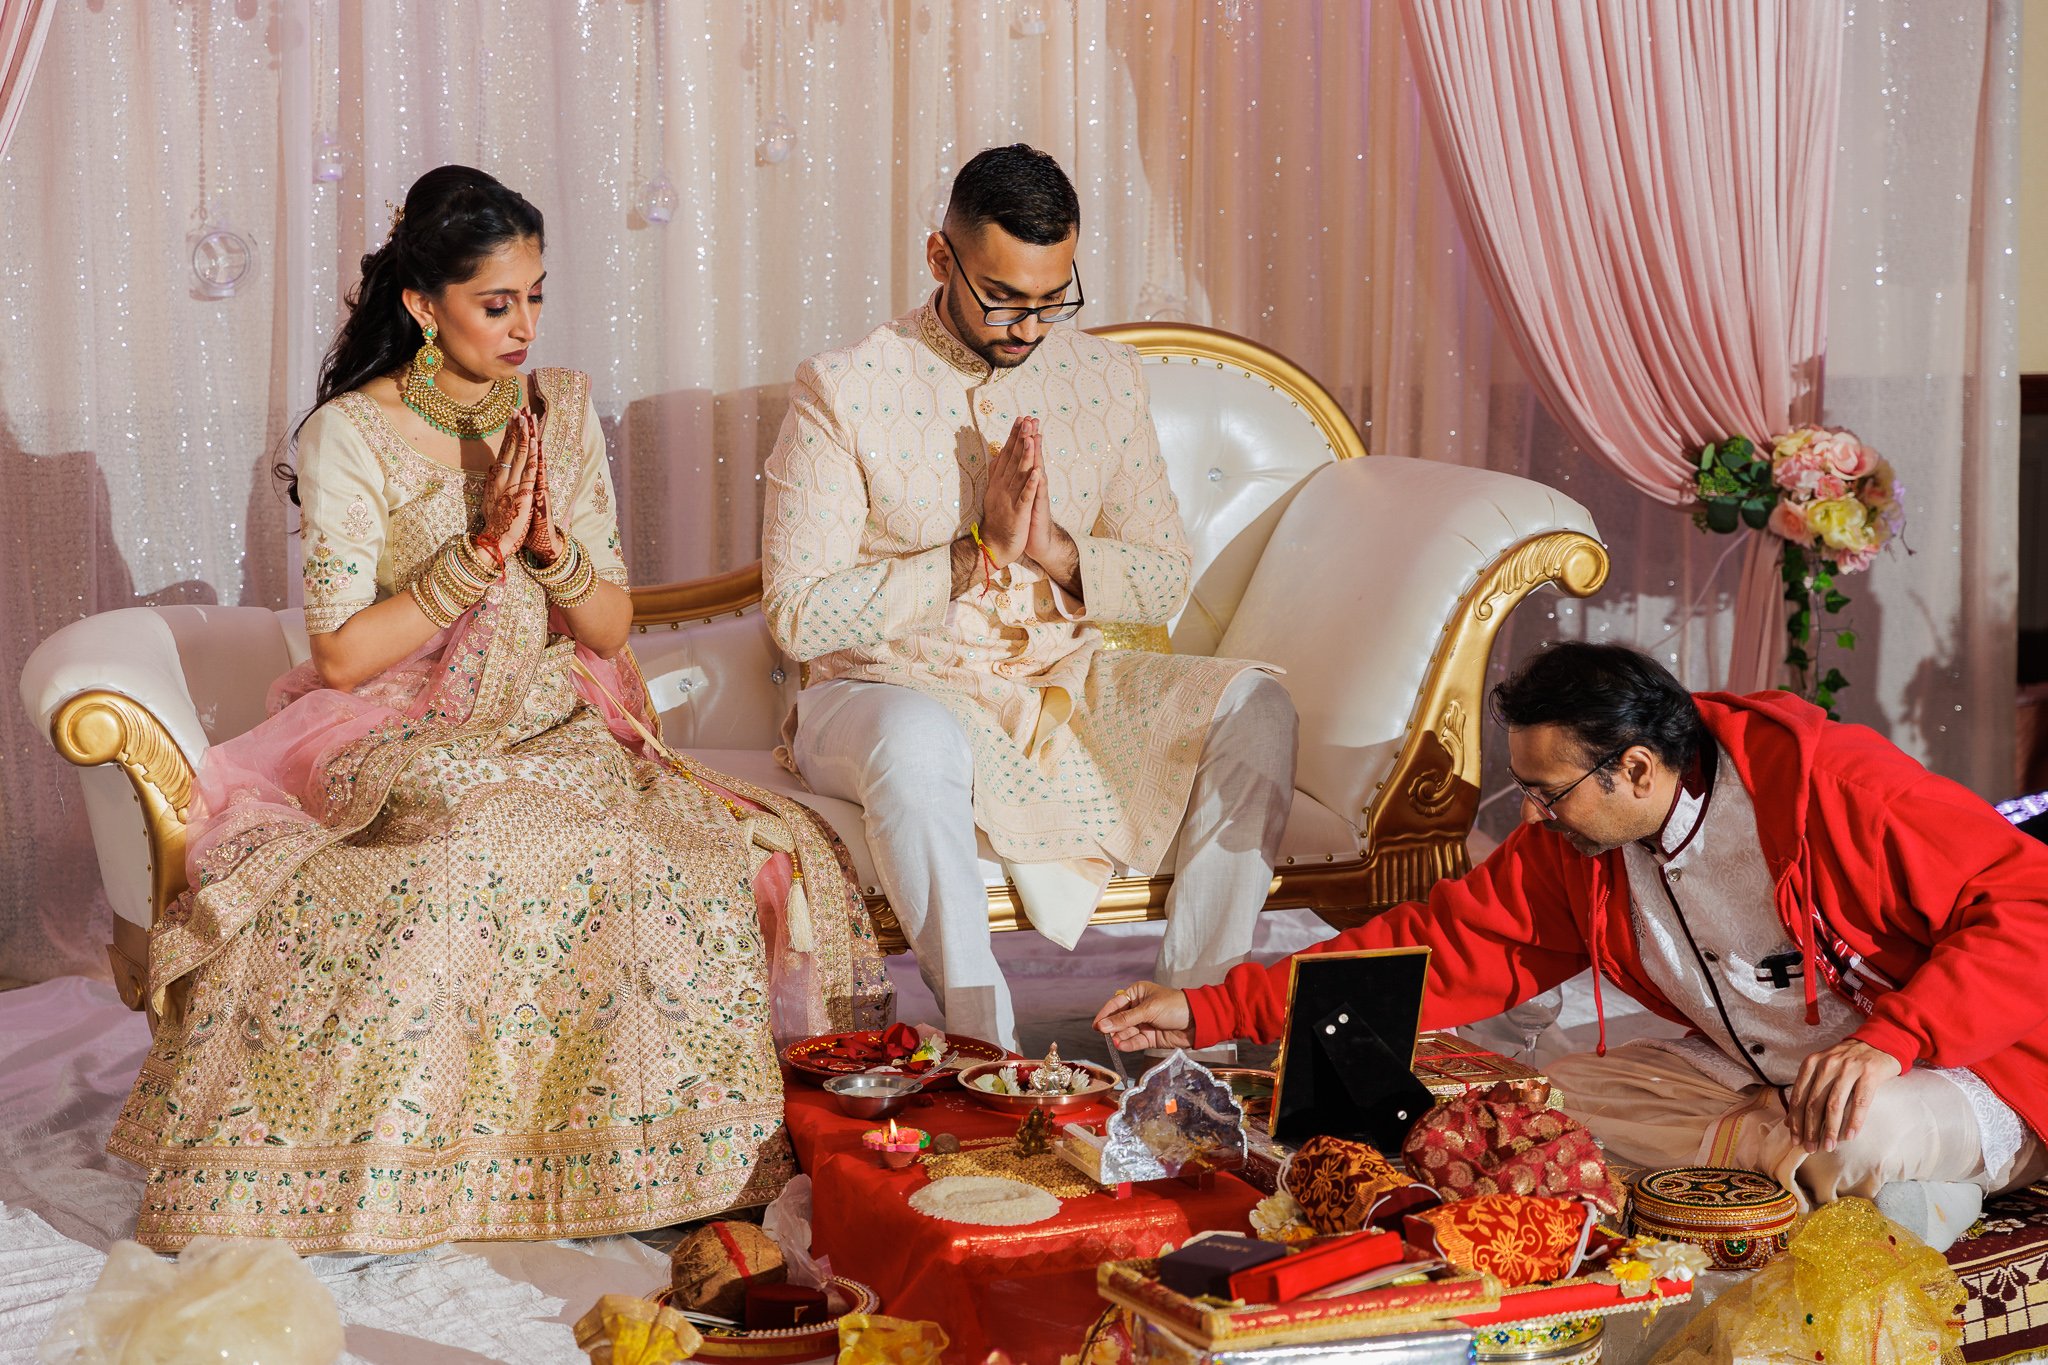 Namrata and Aashish | Hindu Engagement Ceremony | Chantilly, VA — Megan Rei  Photography